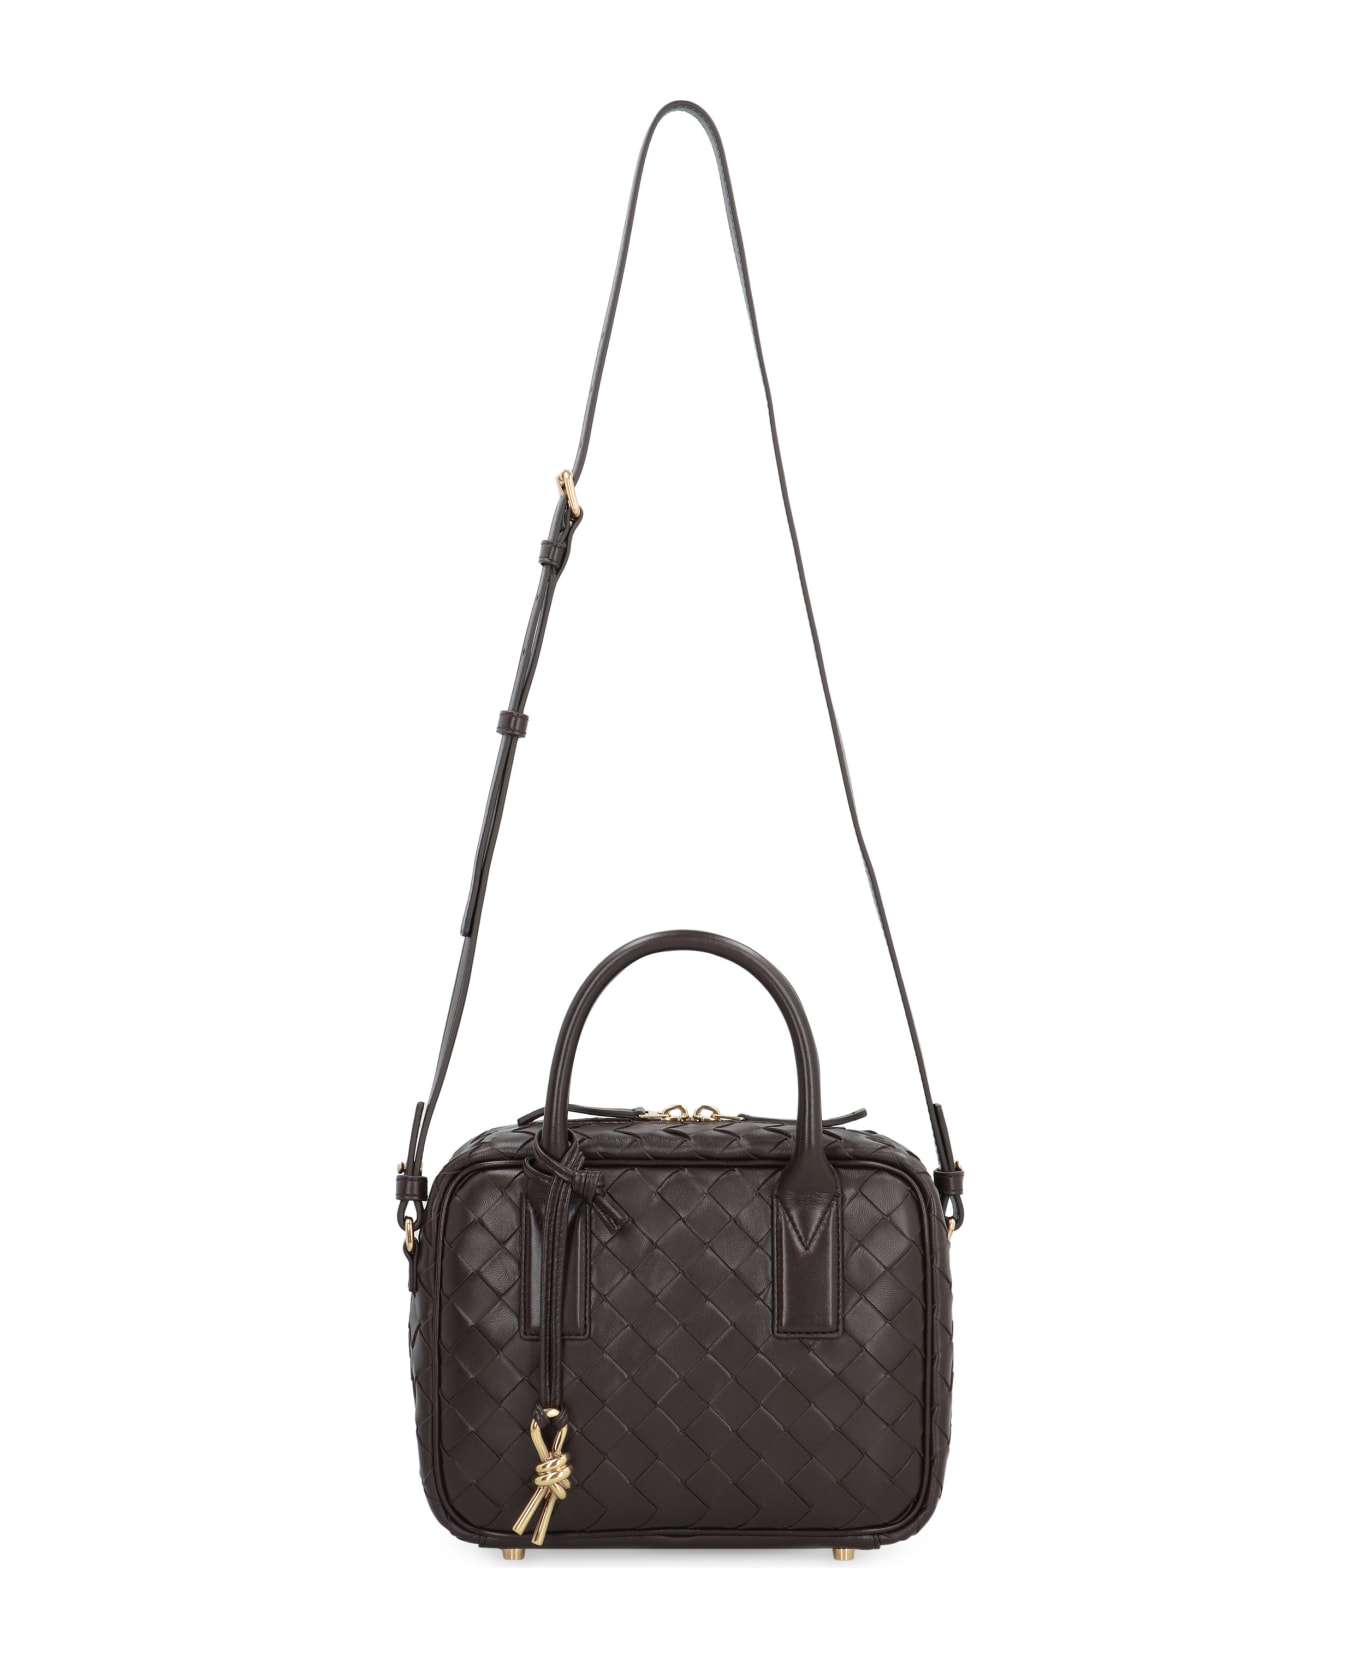 Bottega Veneta Getaway Leather Handbag - brown トートバッグ